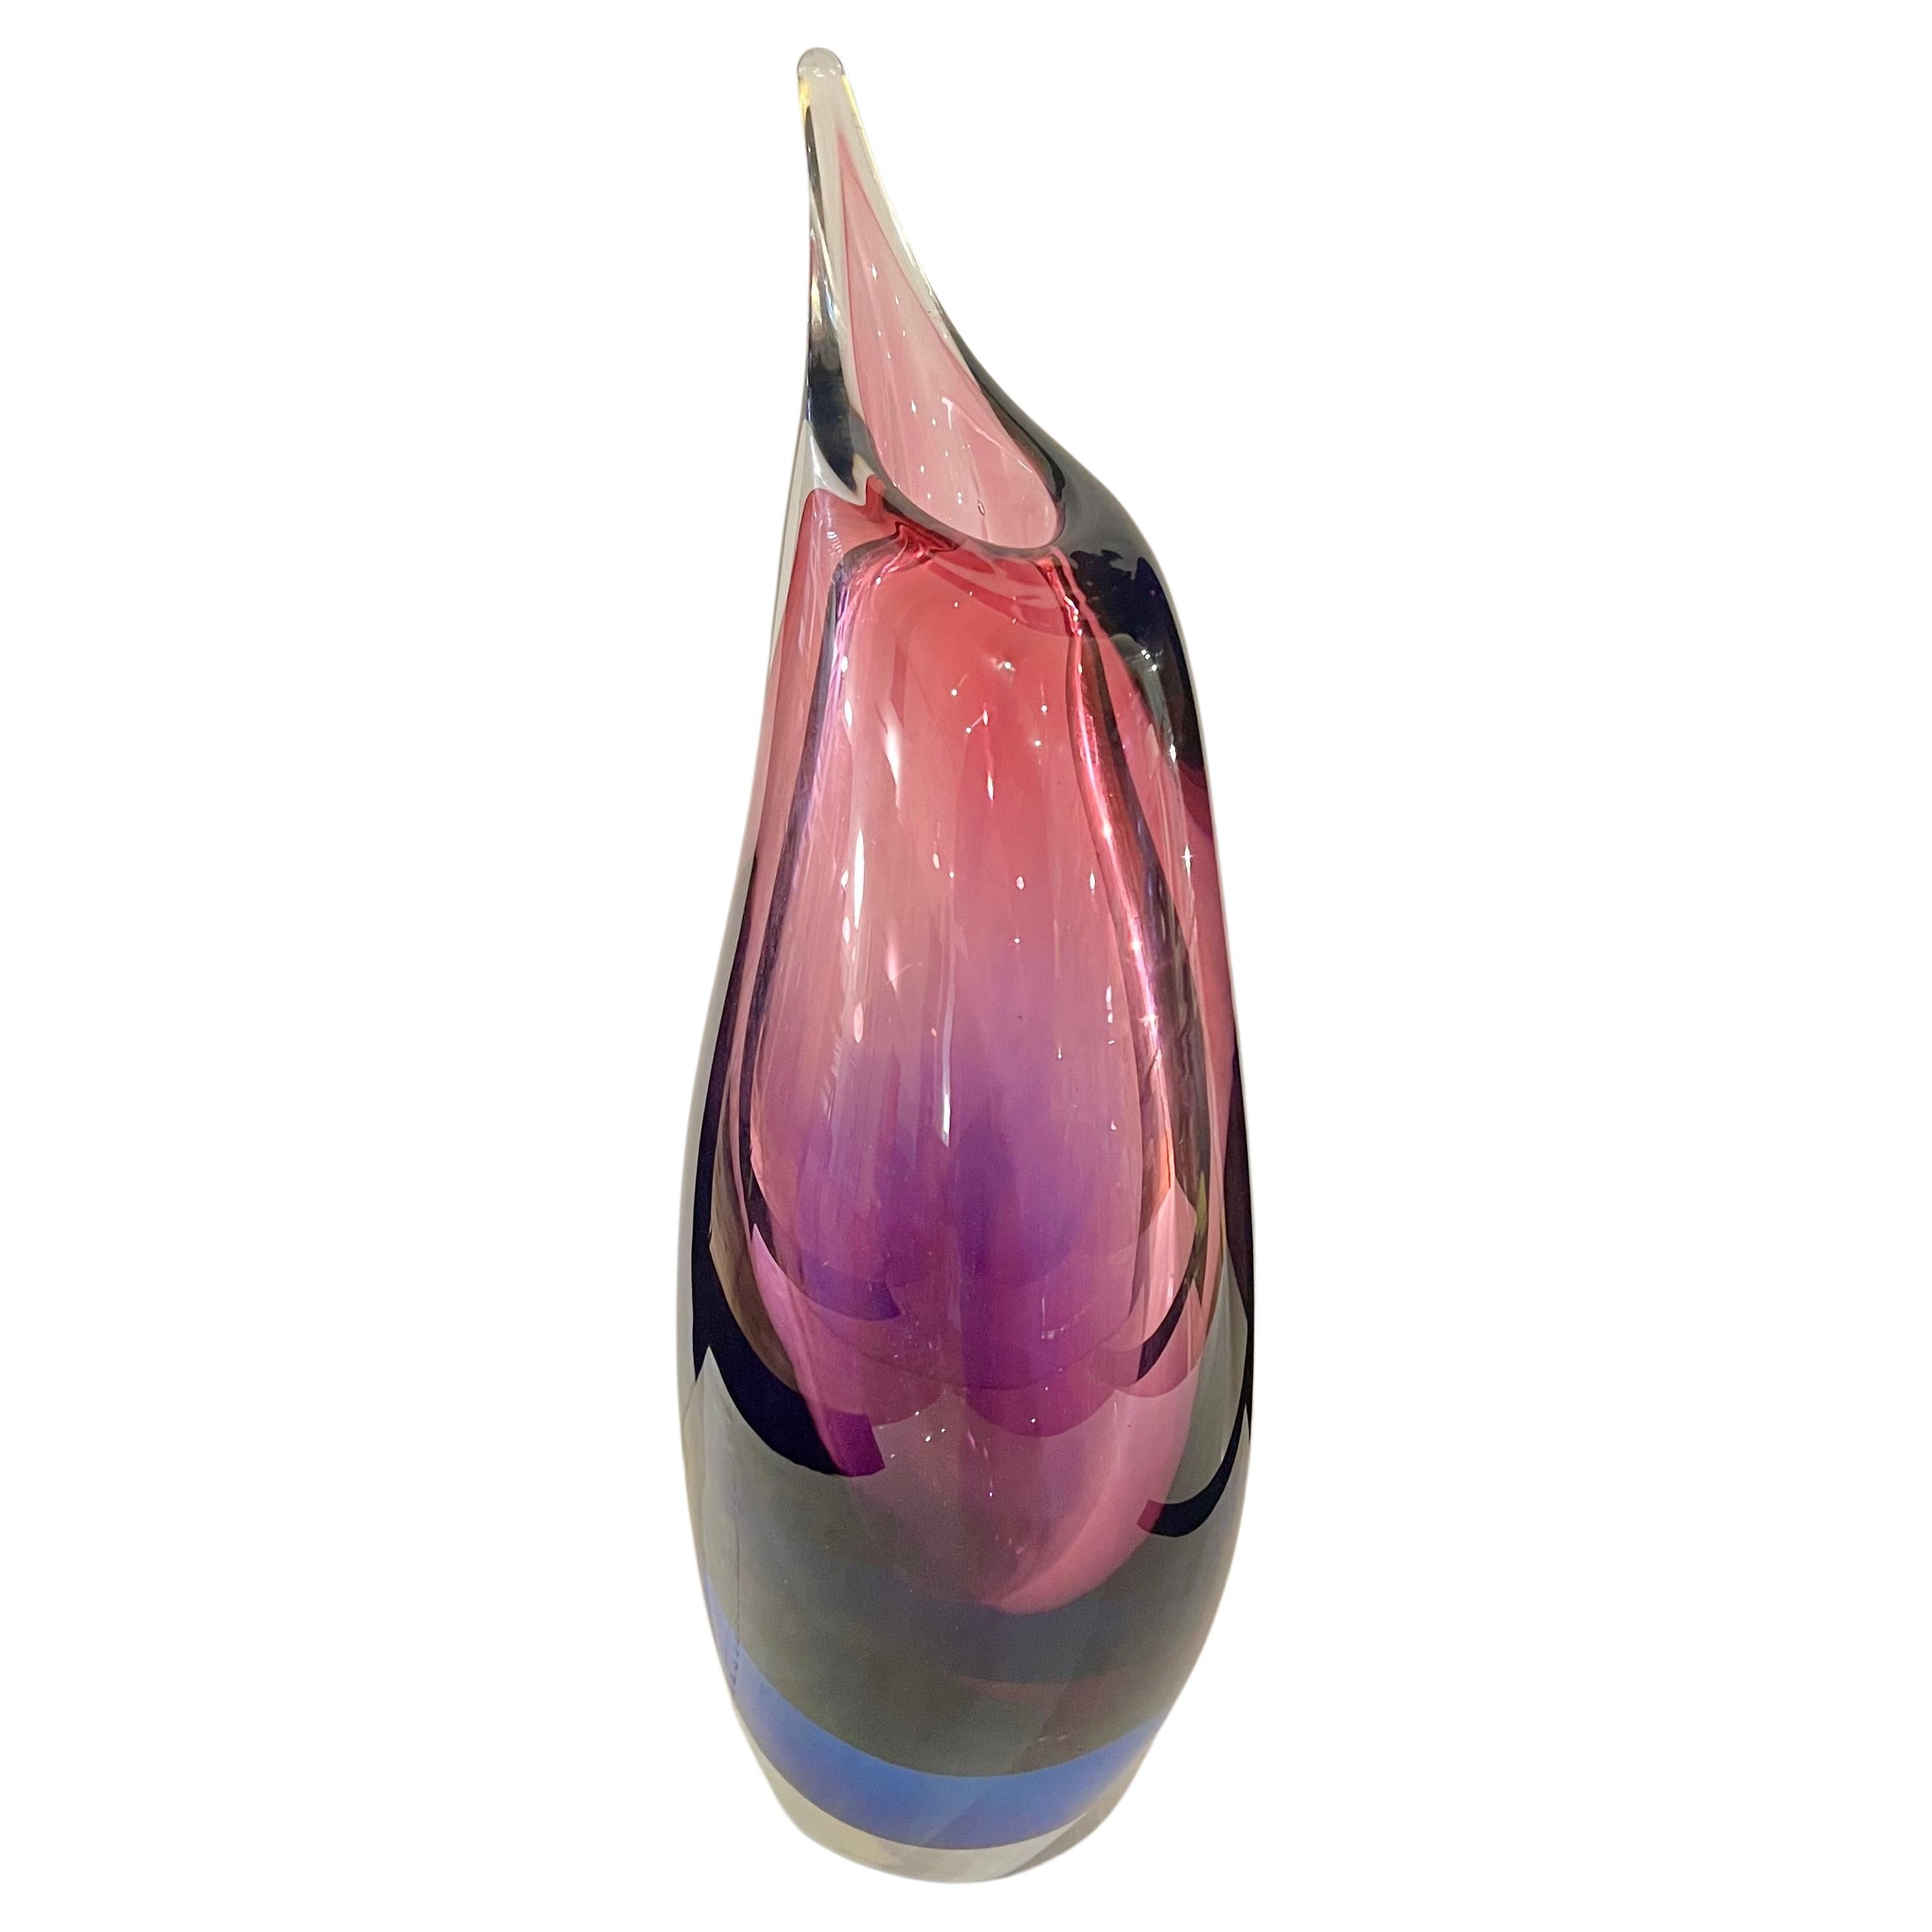 Majestic Large mundgeblasenem Glas Vase, Träne Form circa 1970's ausgezeichneten Zustand keine Chips oder Kratzer schöne Farben, große Murano Italien Mid Century Modern Home Dekor.